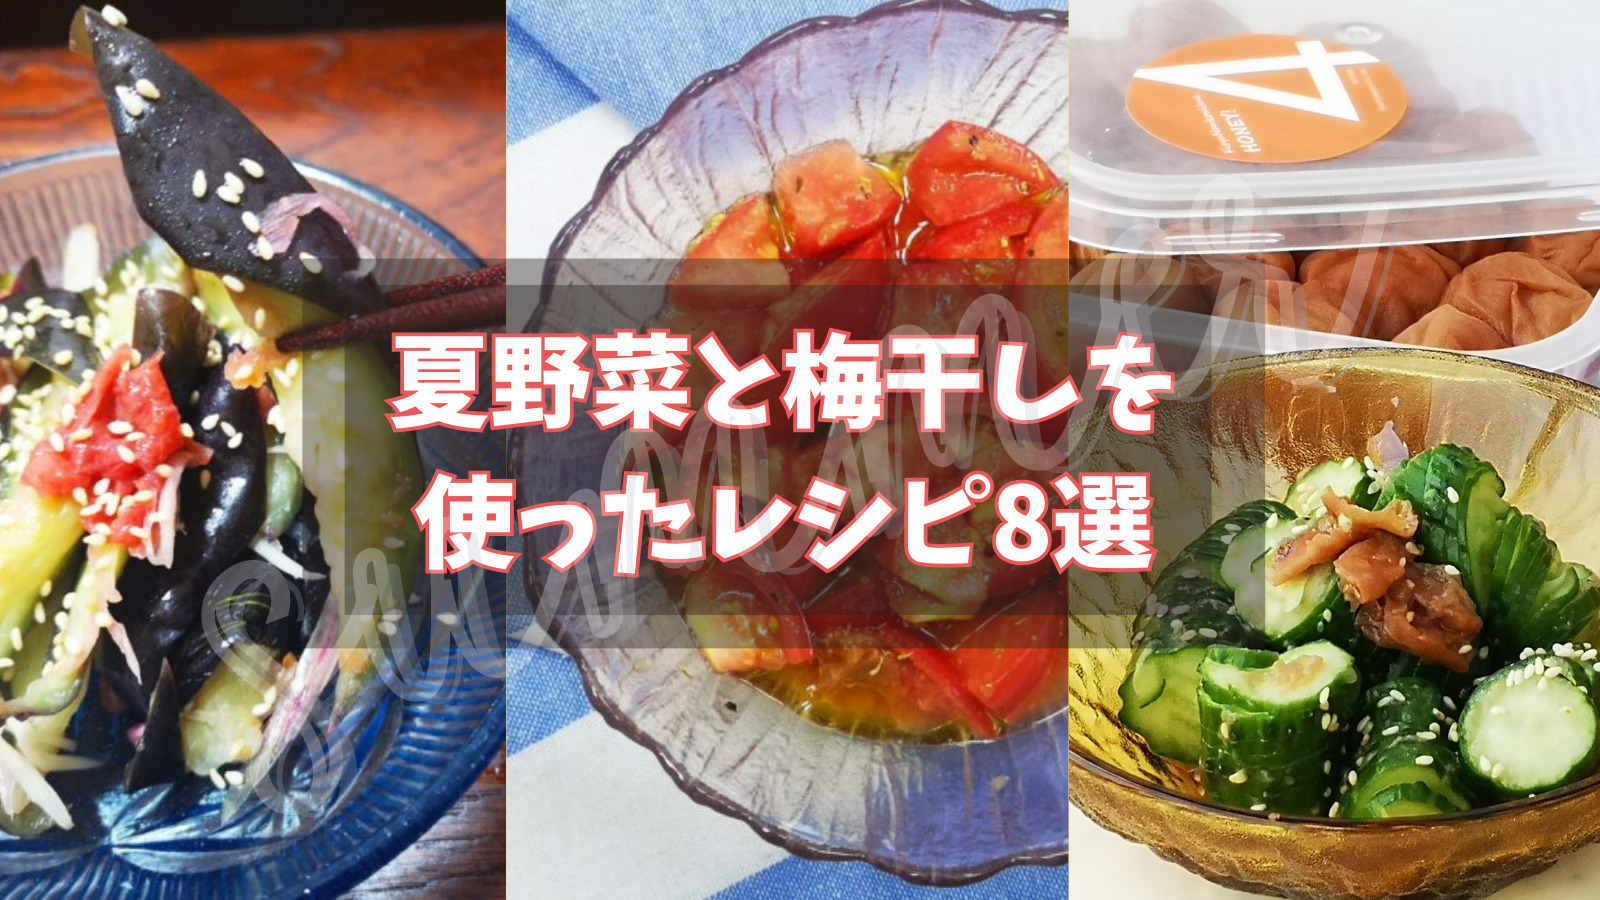 【作りおきレシピ】夏野菜と梅干しを使った簡単レシピ8選